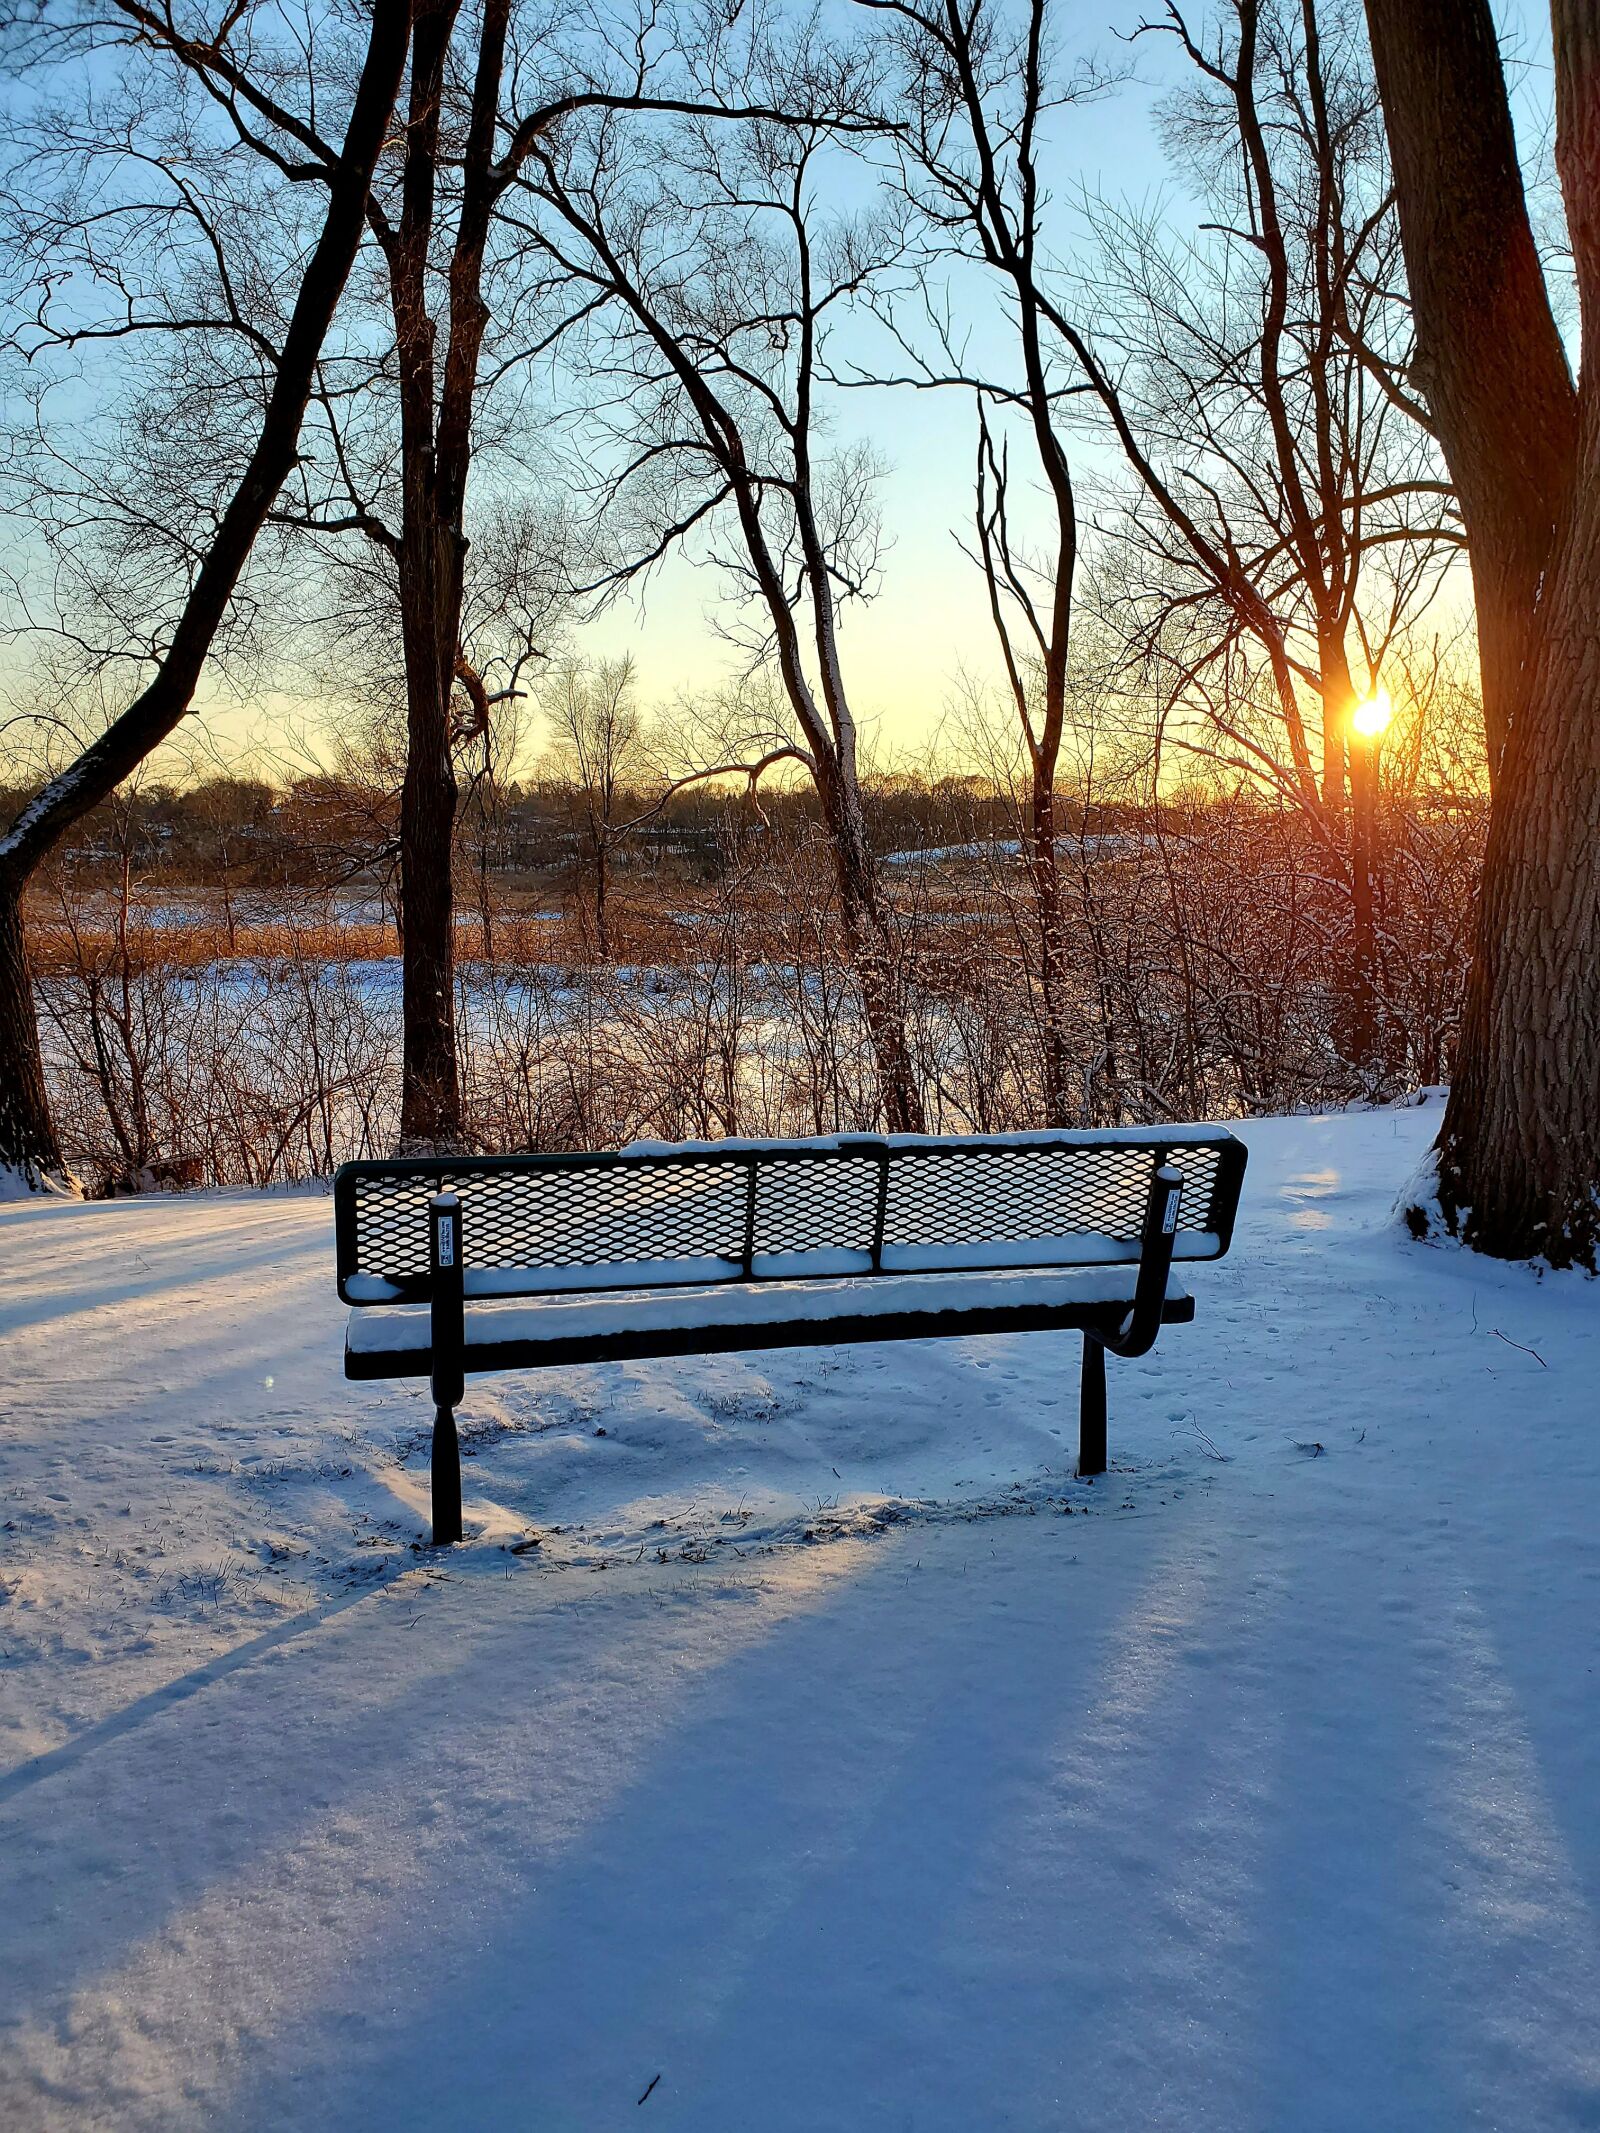 Samsung Galaxy S10e sample photo. Winter, bench, solitude photography